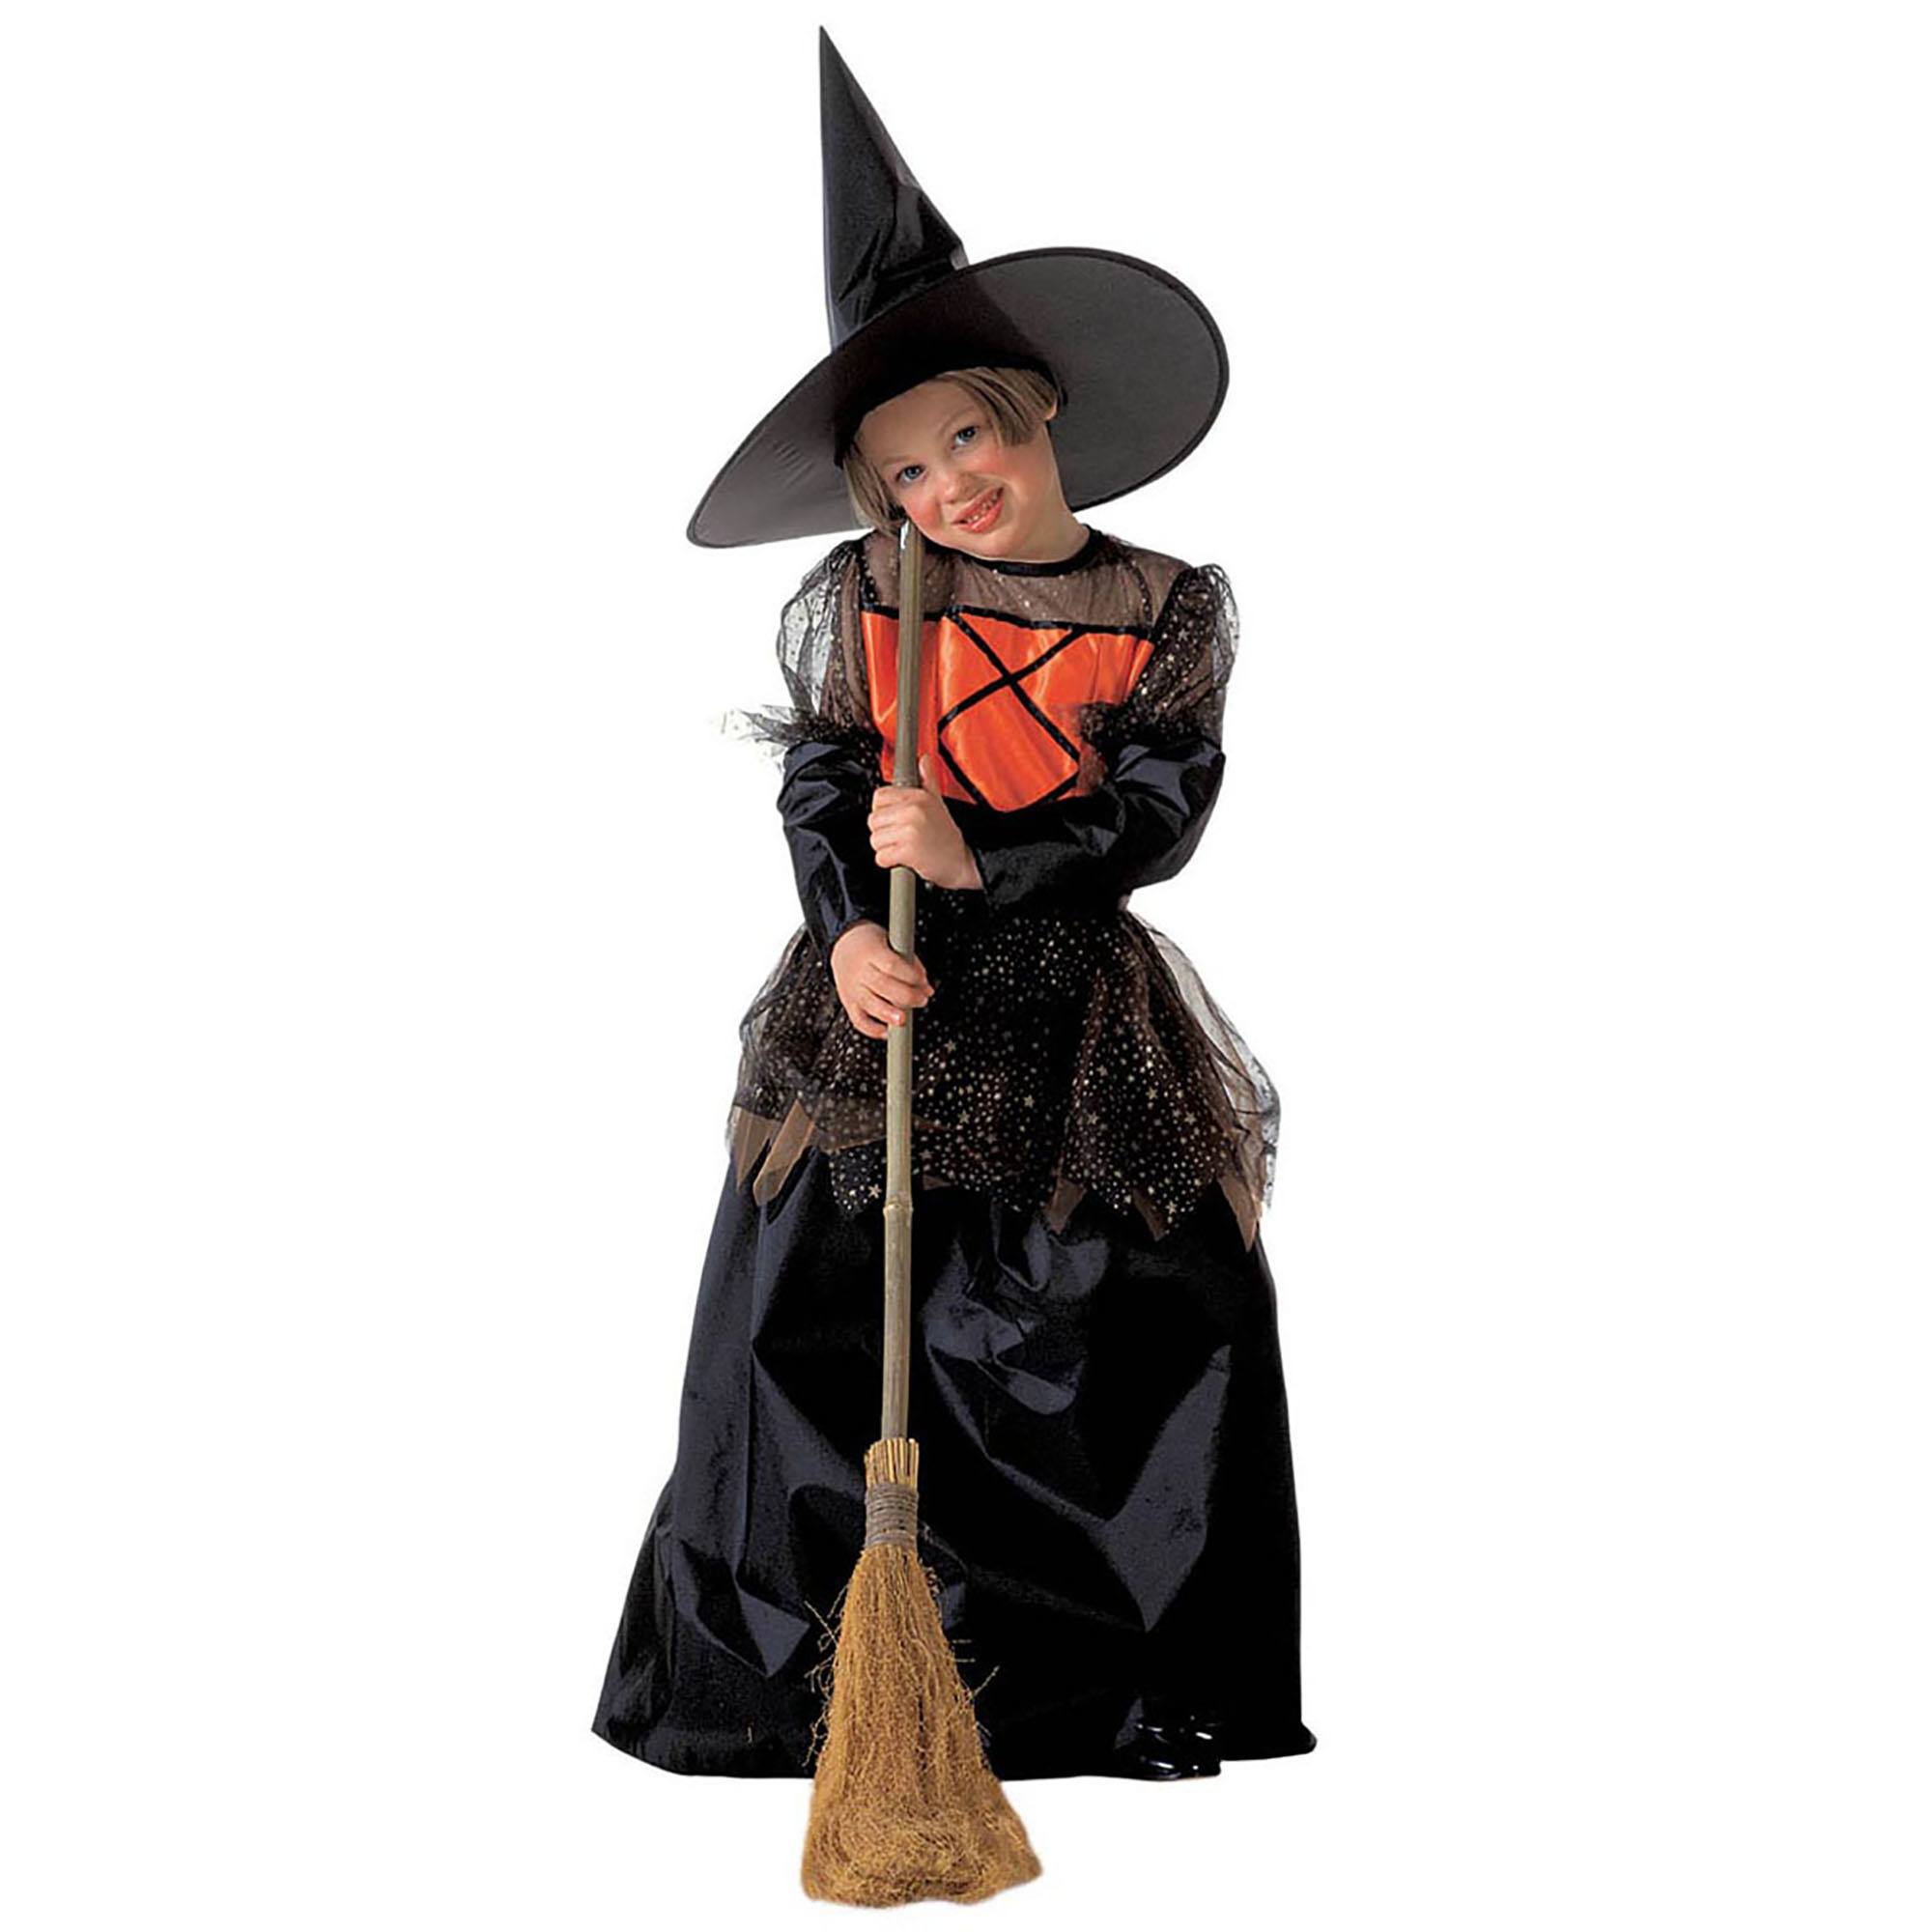 heksen jurk Brenna zwart oranje voor meisjes